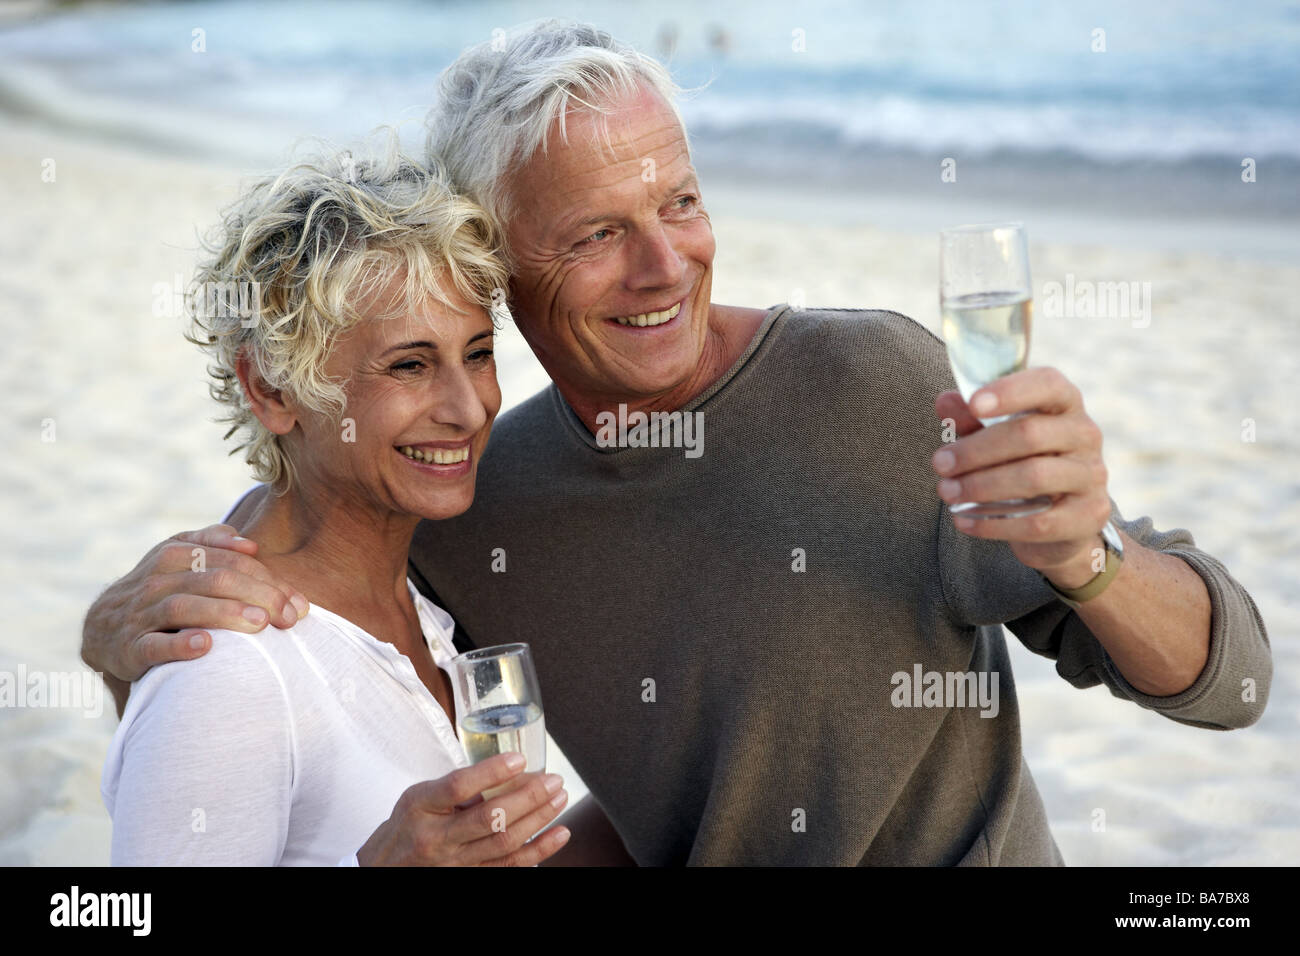 Sandy beach senior-pair champagne drinks cheerfully semi-portrait series people 50-60 years 60-70 years seniors pair beach sand Stock Photo